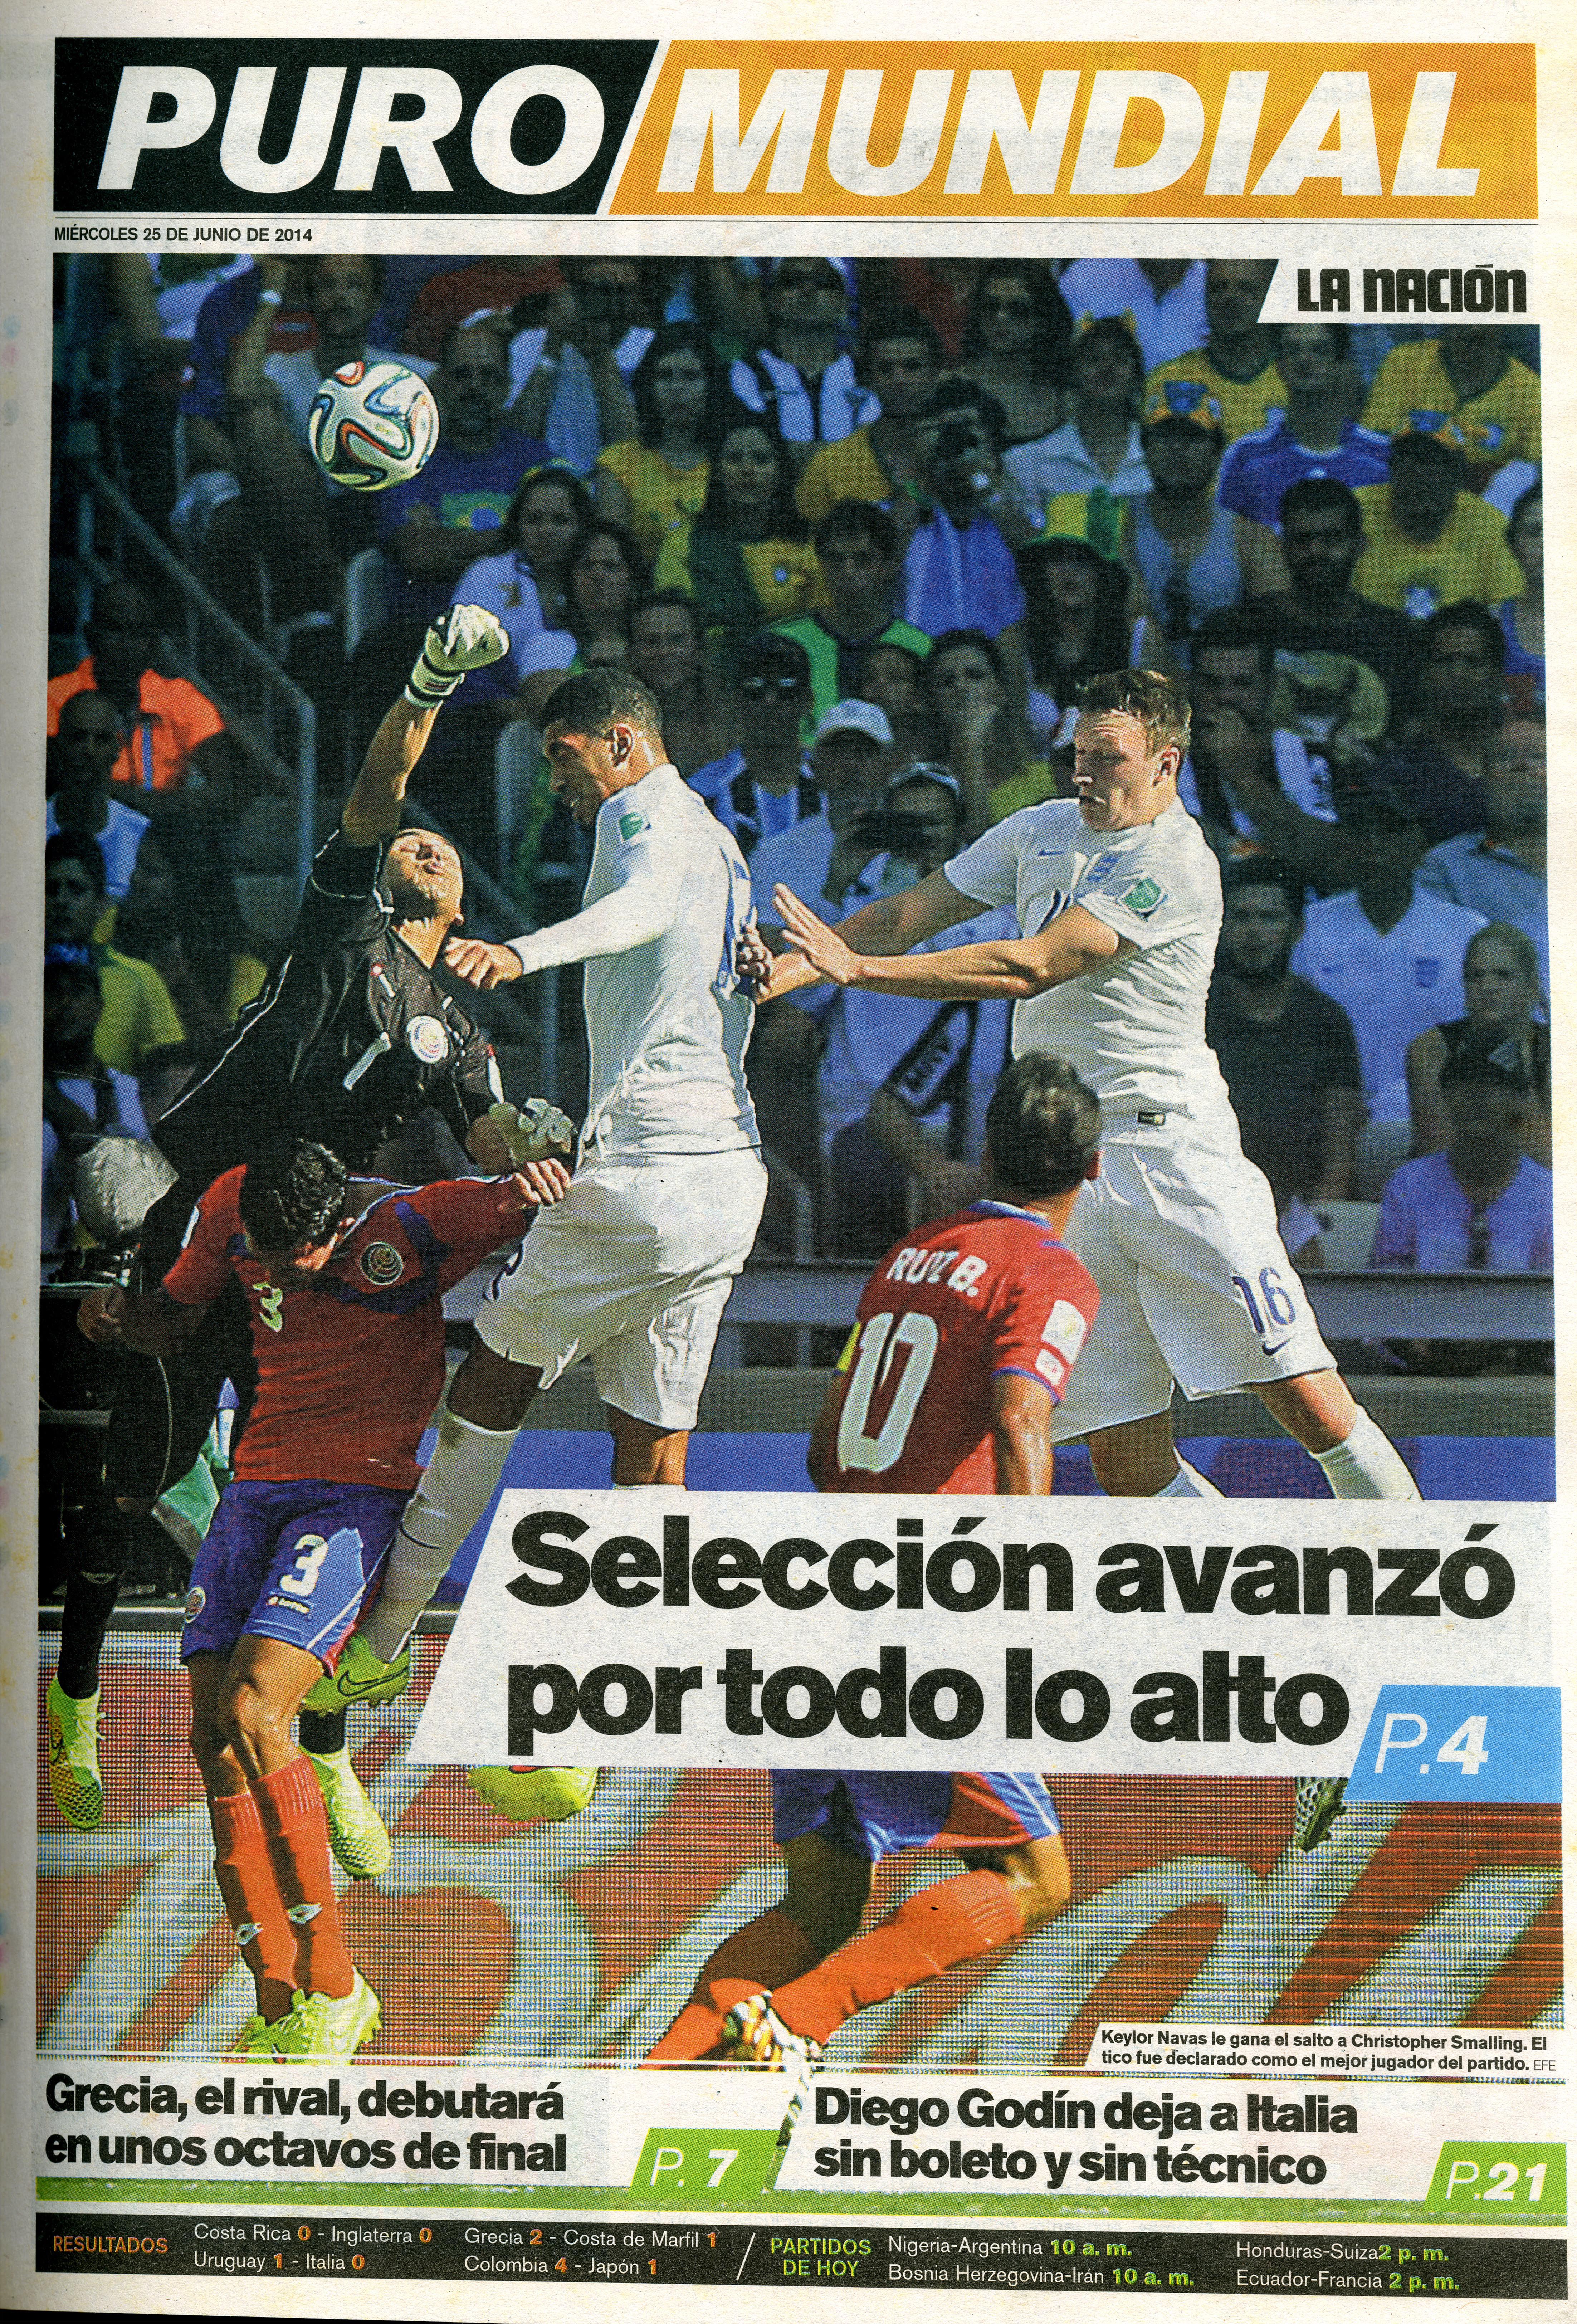 Keylor Navas fue declarado el mejor jugador del partido en el juego entre la Selección de Costa Rica e Inglaterra en el Mundial de Brasil 2014.